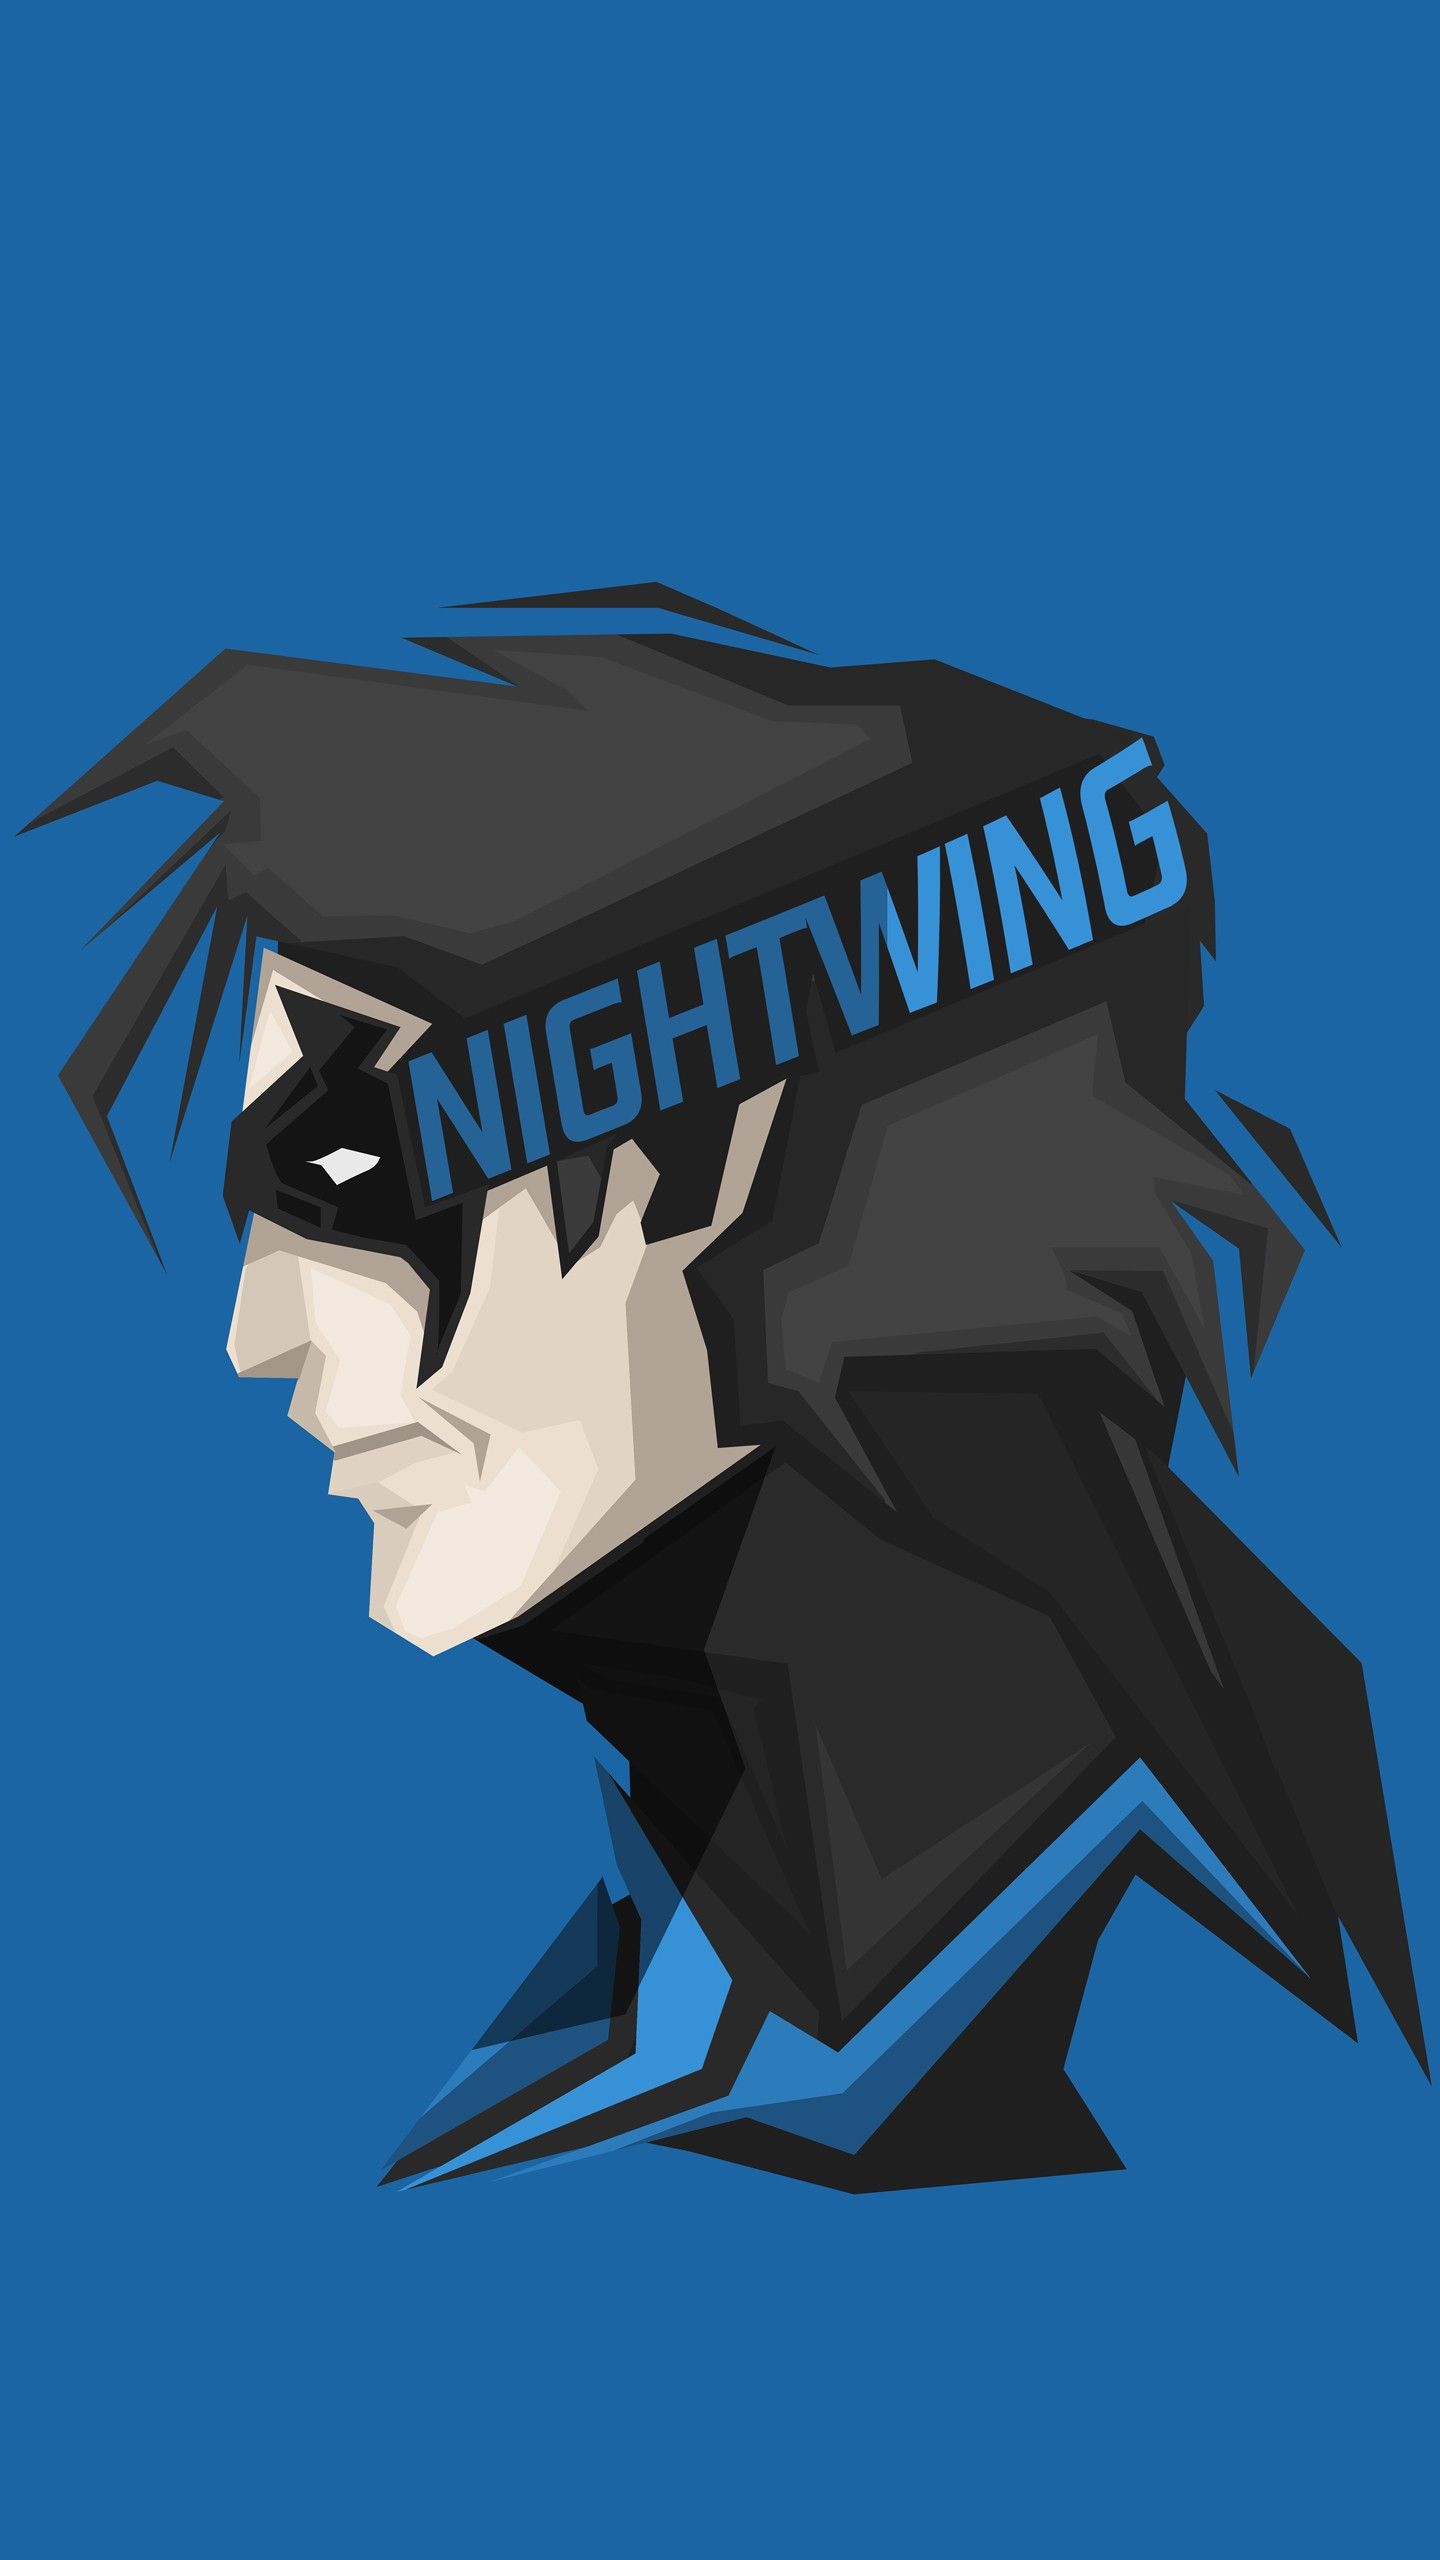 Nightwing DC Comics Superhero 4K 8k Wallpaper